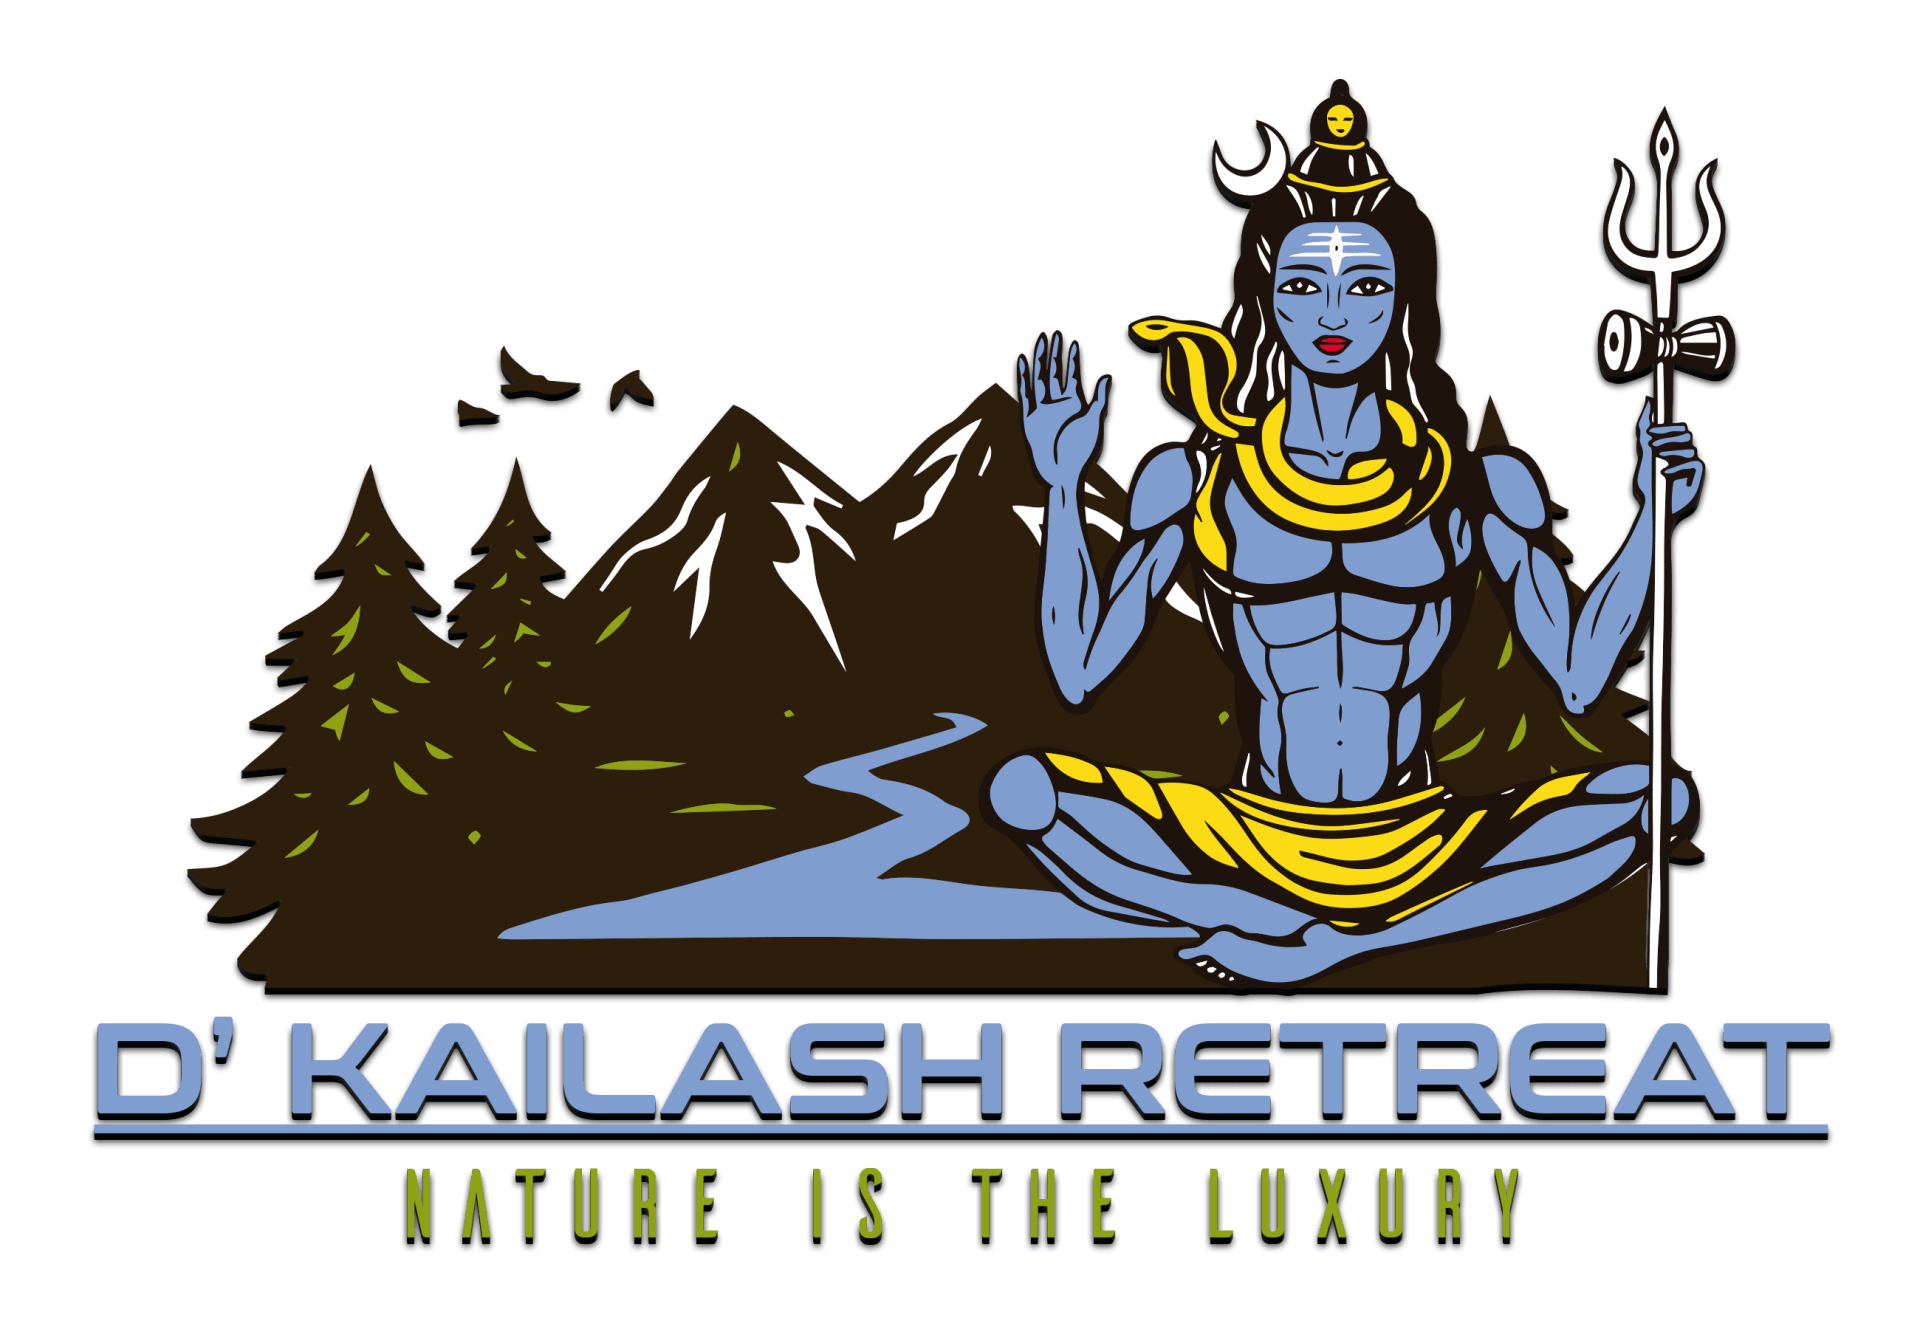 D kailash retreat logo(1)